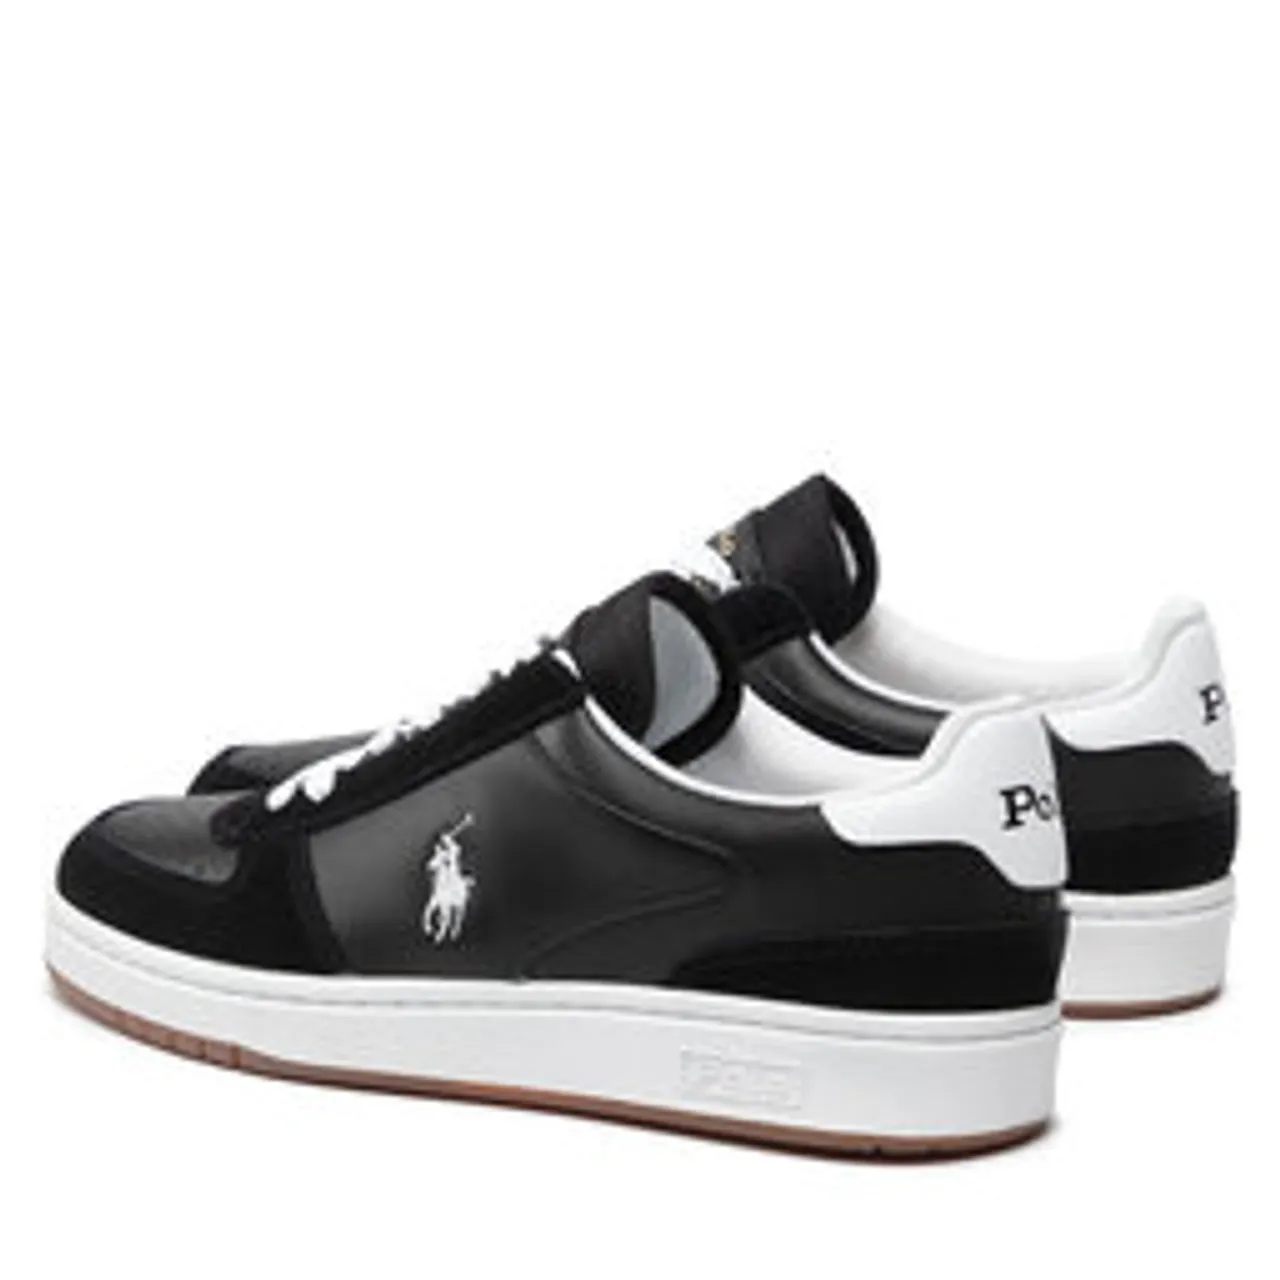 Sneakers Polo Ralph Lauren Polo Crt Pp 809834463001 Black/White Pp